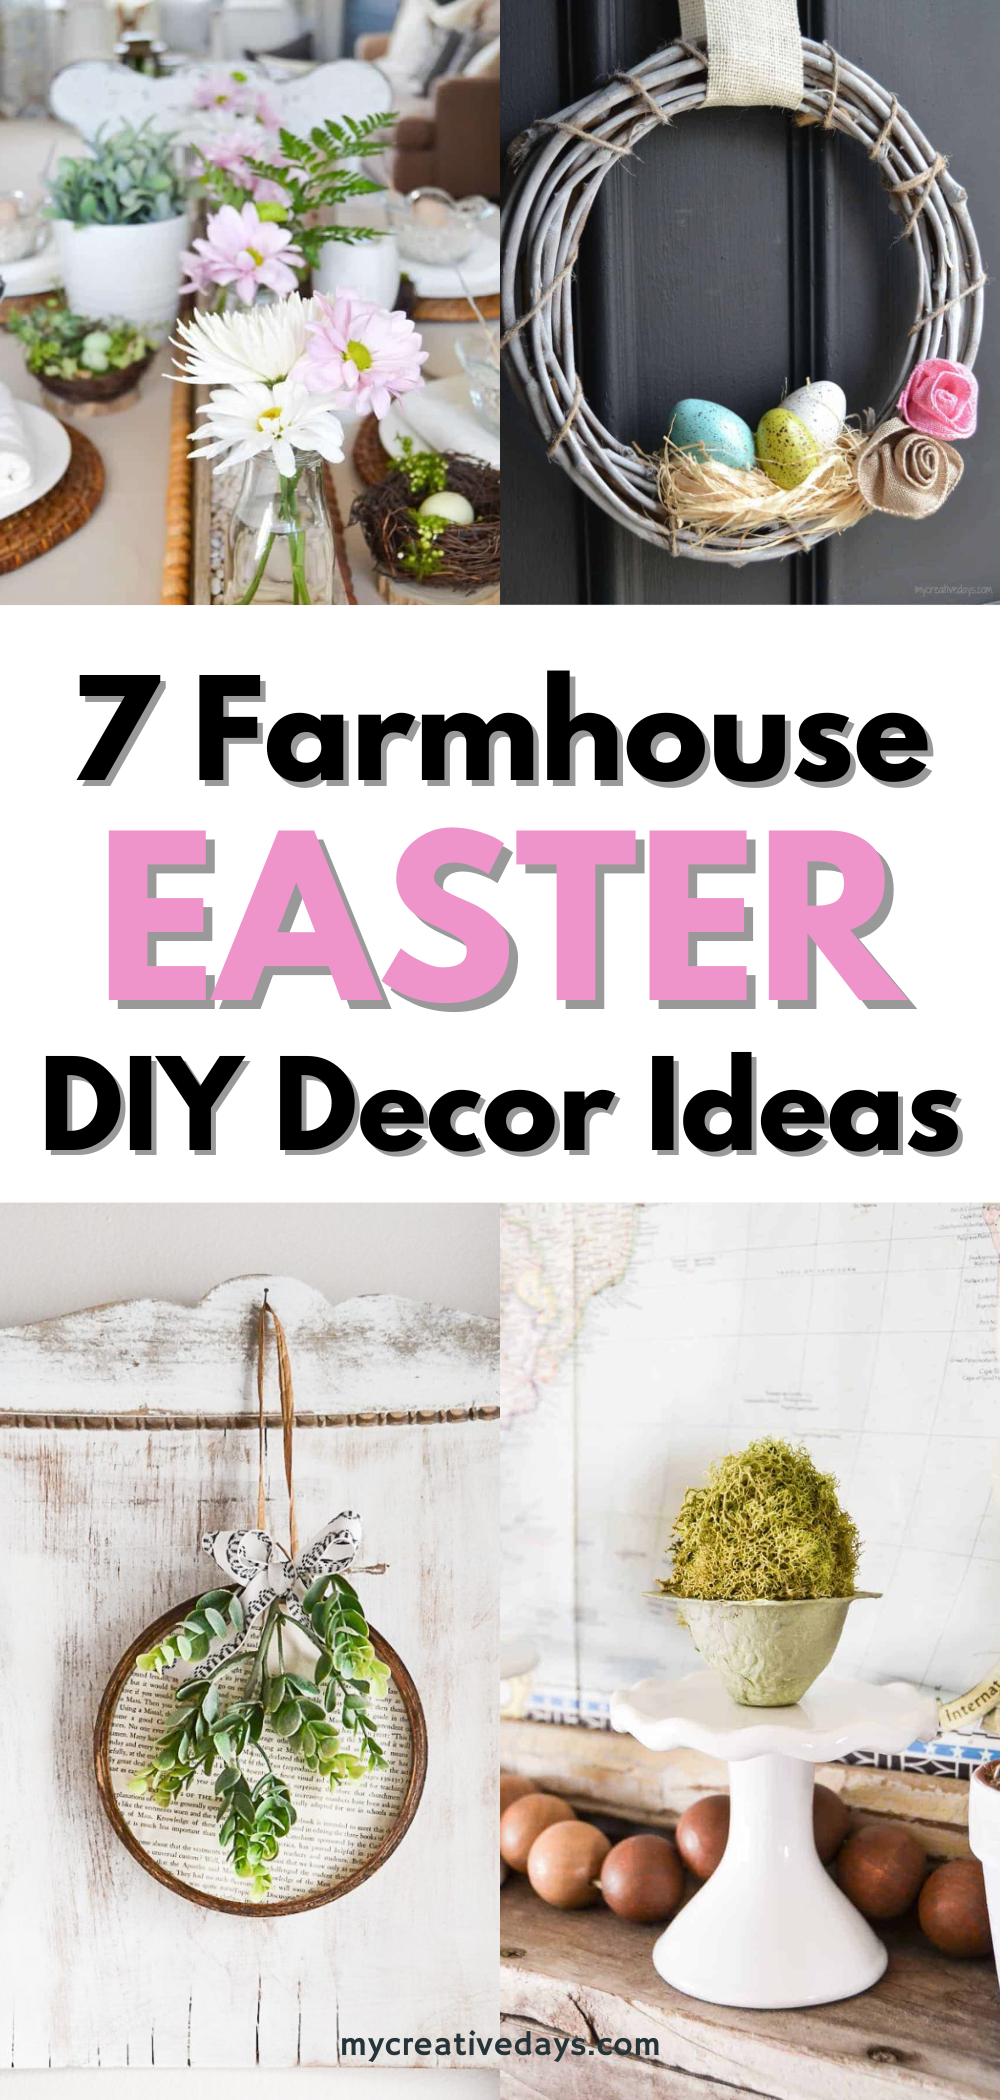 Farmhouse Easter Decor Ideas